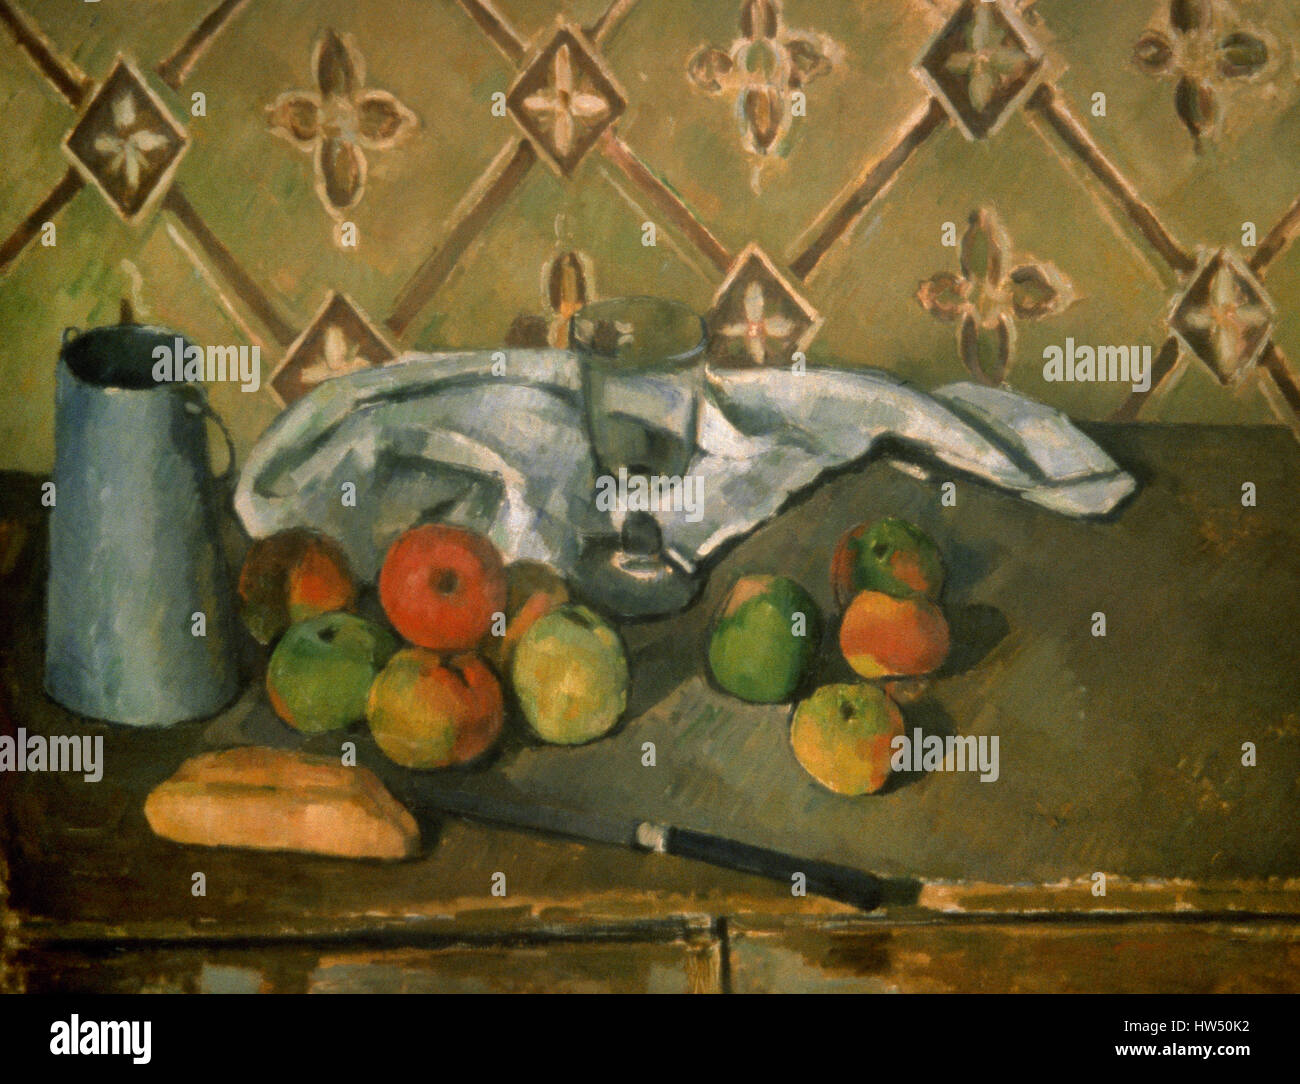 Paul Cézanne (1839-1906). Französischer Maler. Post-Impressionisten. Stillleben mit Früchten, Serviette und Krug Milch. Öl auf Leinwand, 1885-86. Orangerie-Museum. Paris. Frankreich. Stockfoto